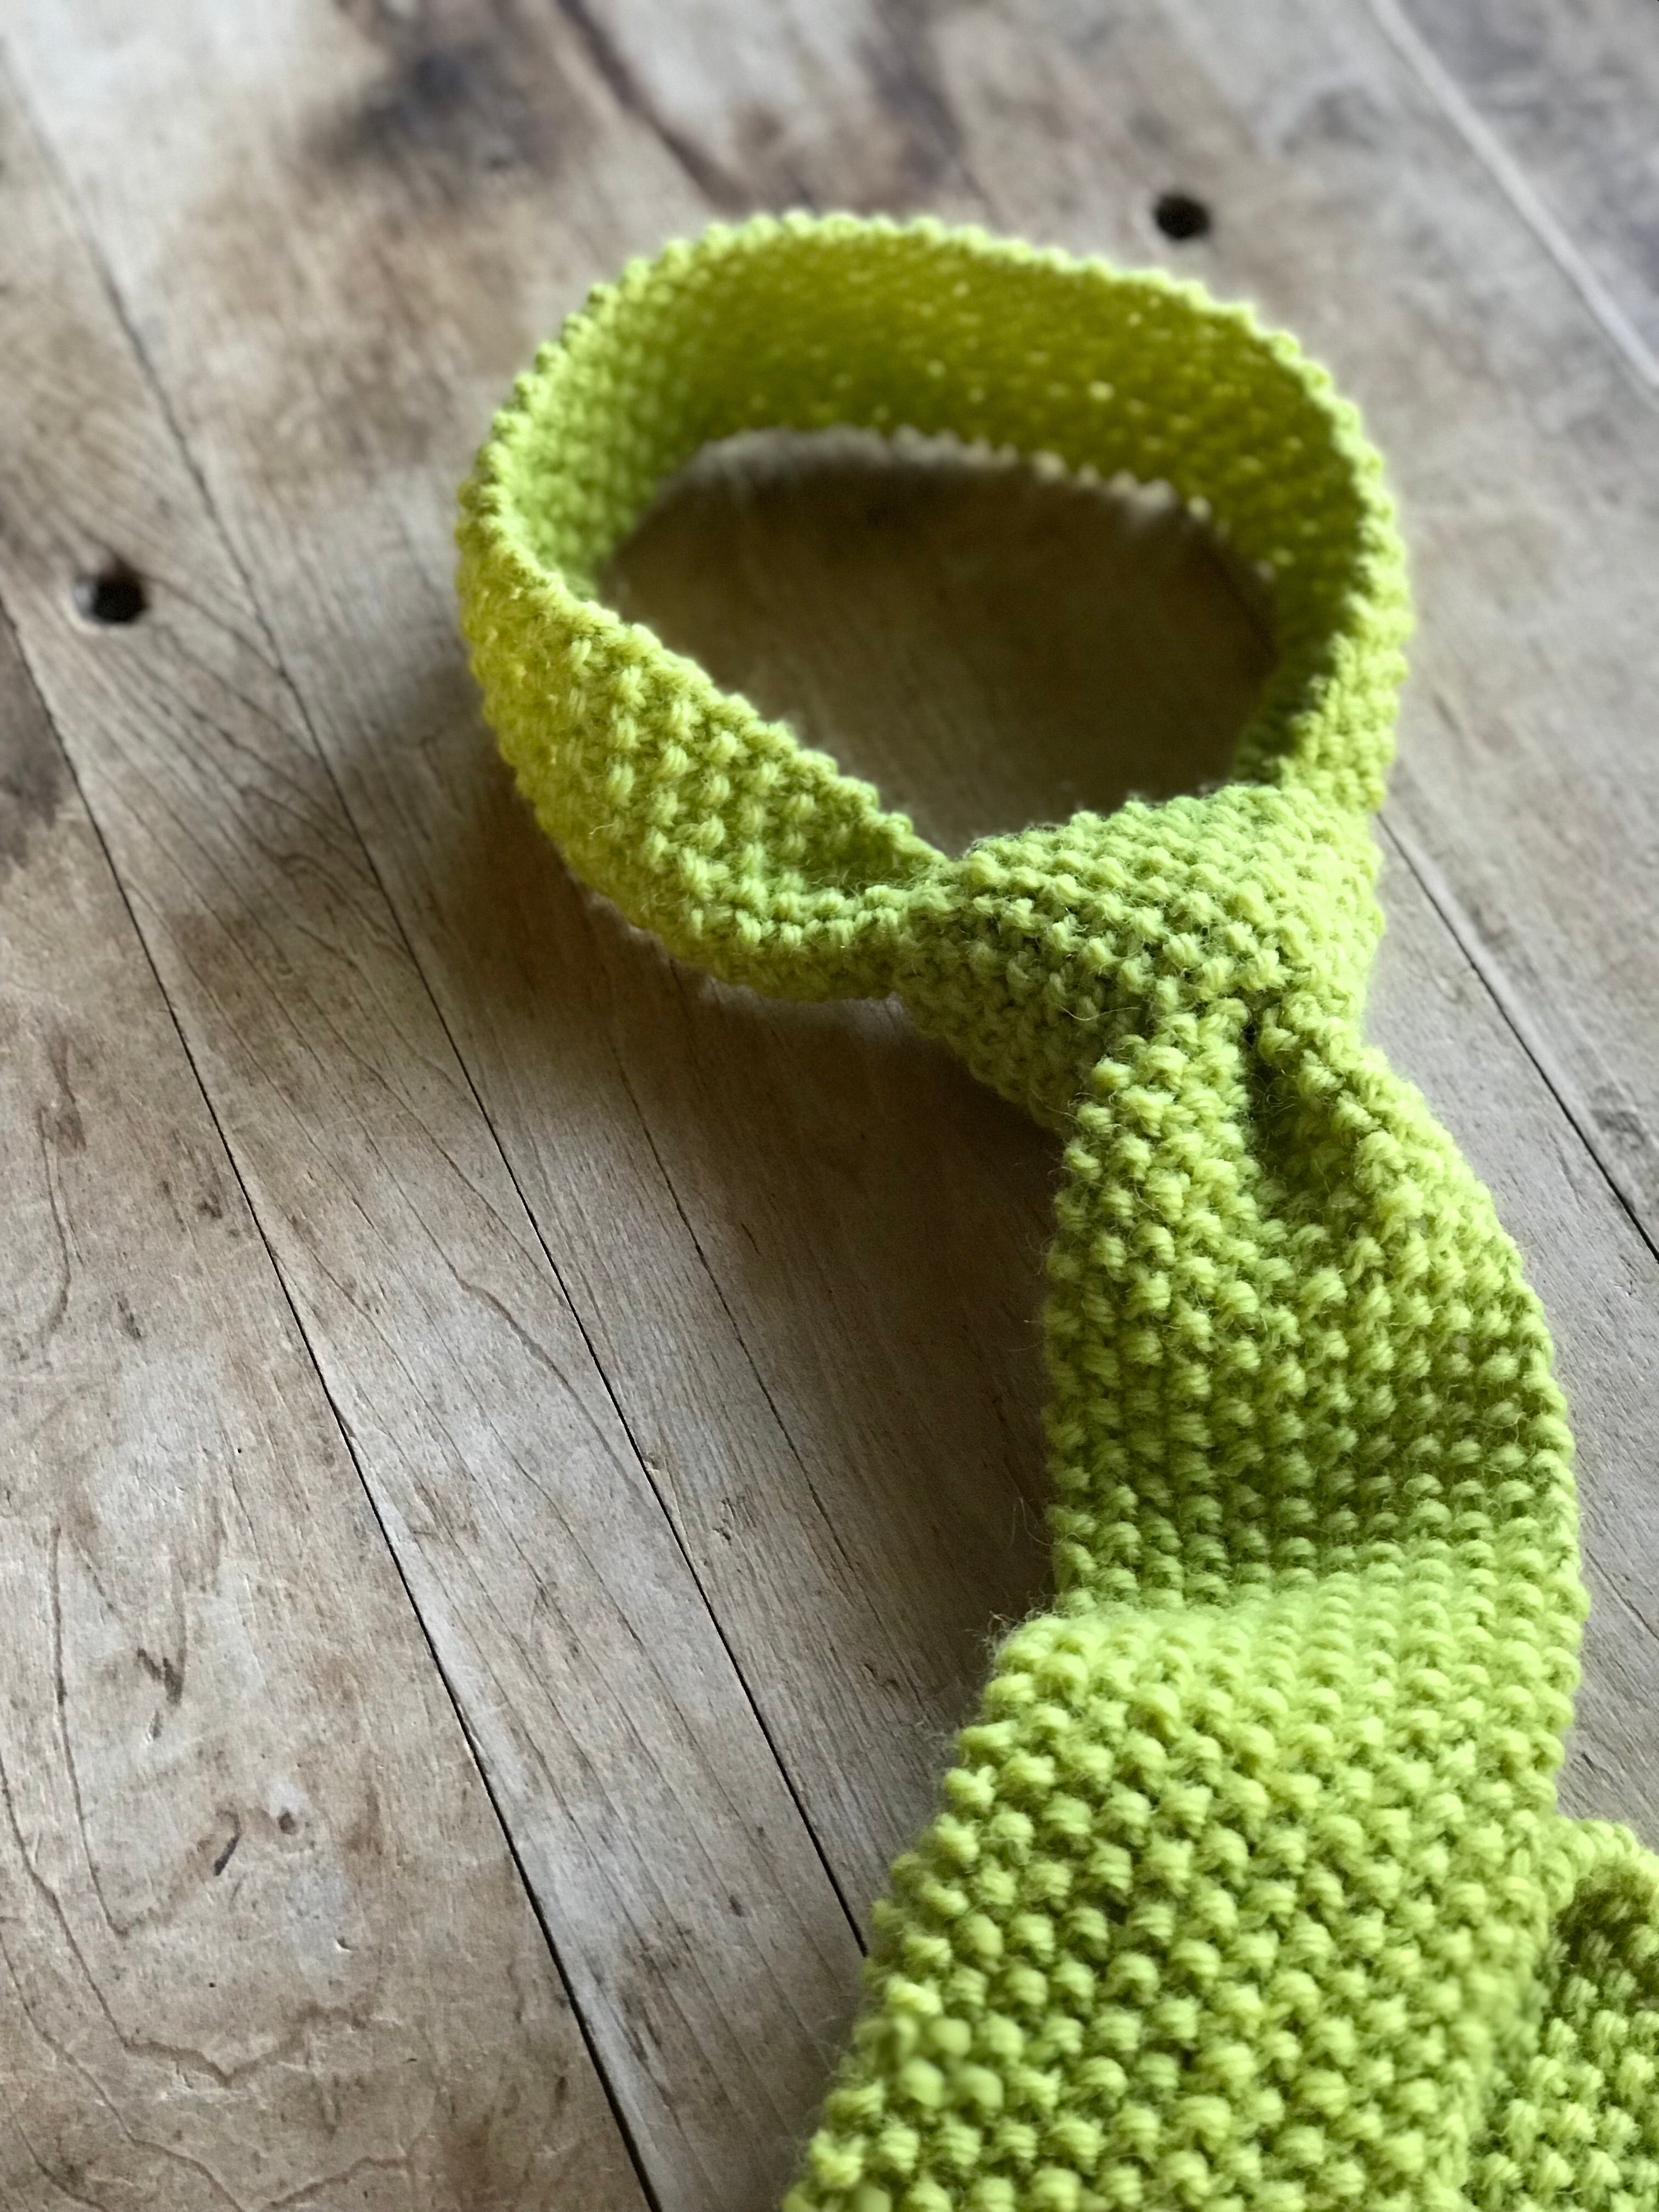 Wool Hand Knit Necktie